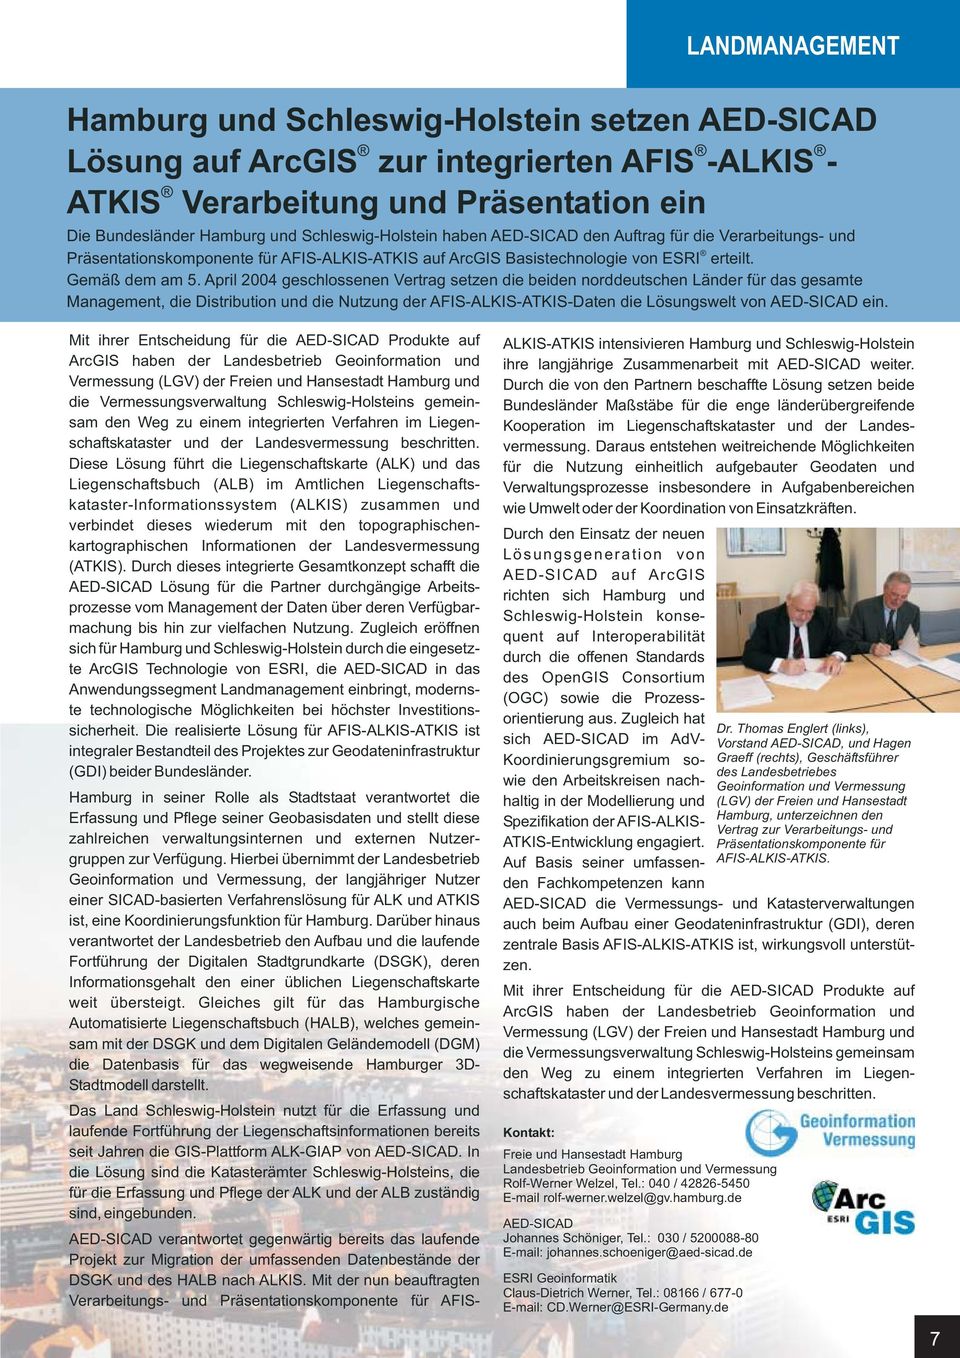 April 2004 geschlossenen Vertrag setzen die beiden norddeutschen Länder für das gesamte Management, die Distribution und die Nutzung der AFIS-ALKIS-ATKIS-Daten die Lösungswelt von ein.